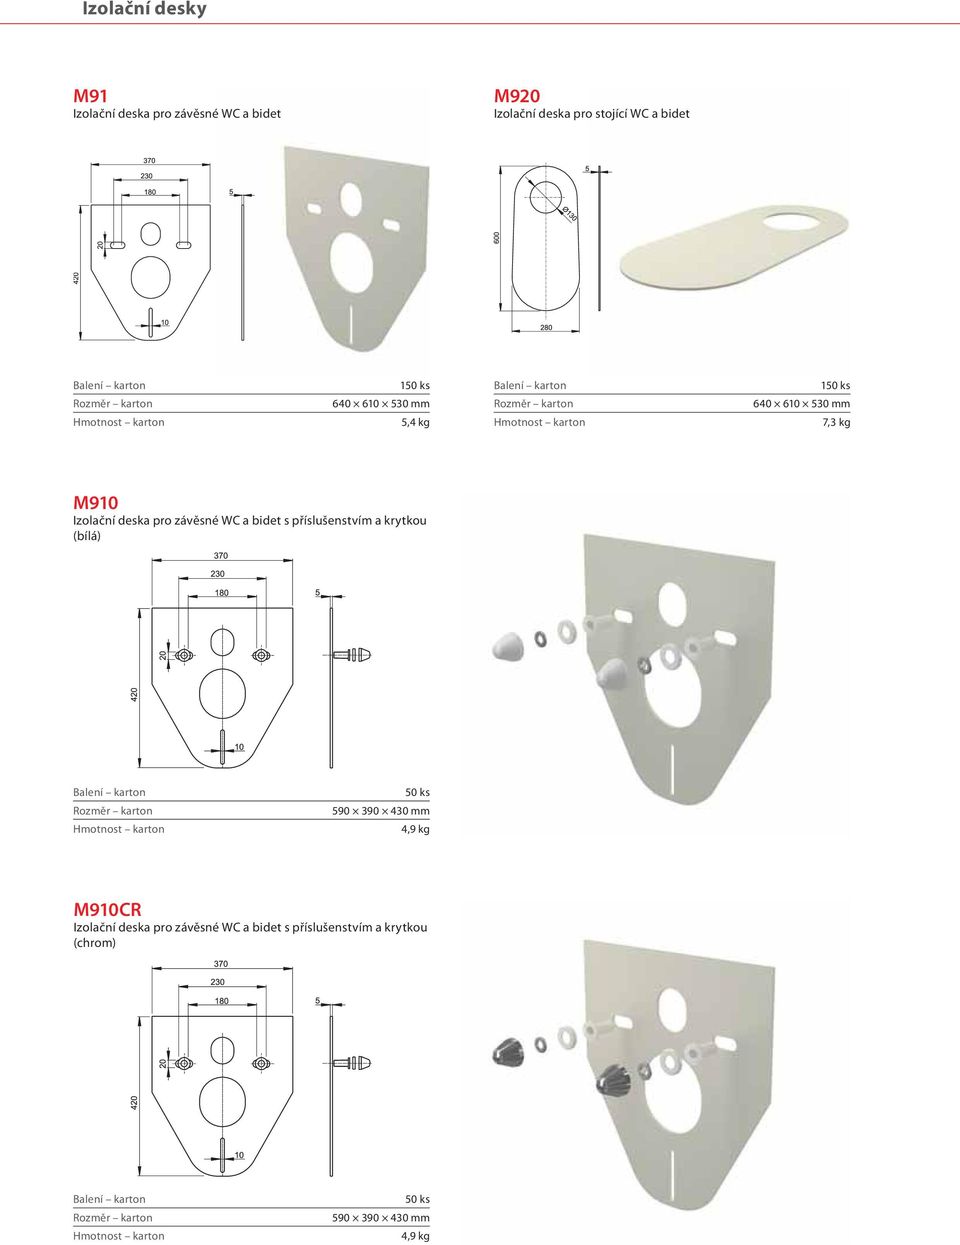 Izolační deska pro závěsné WC a bidet s příslušenstvím a krytkou (bílá) 50 ks 4,9